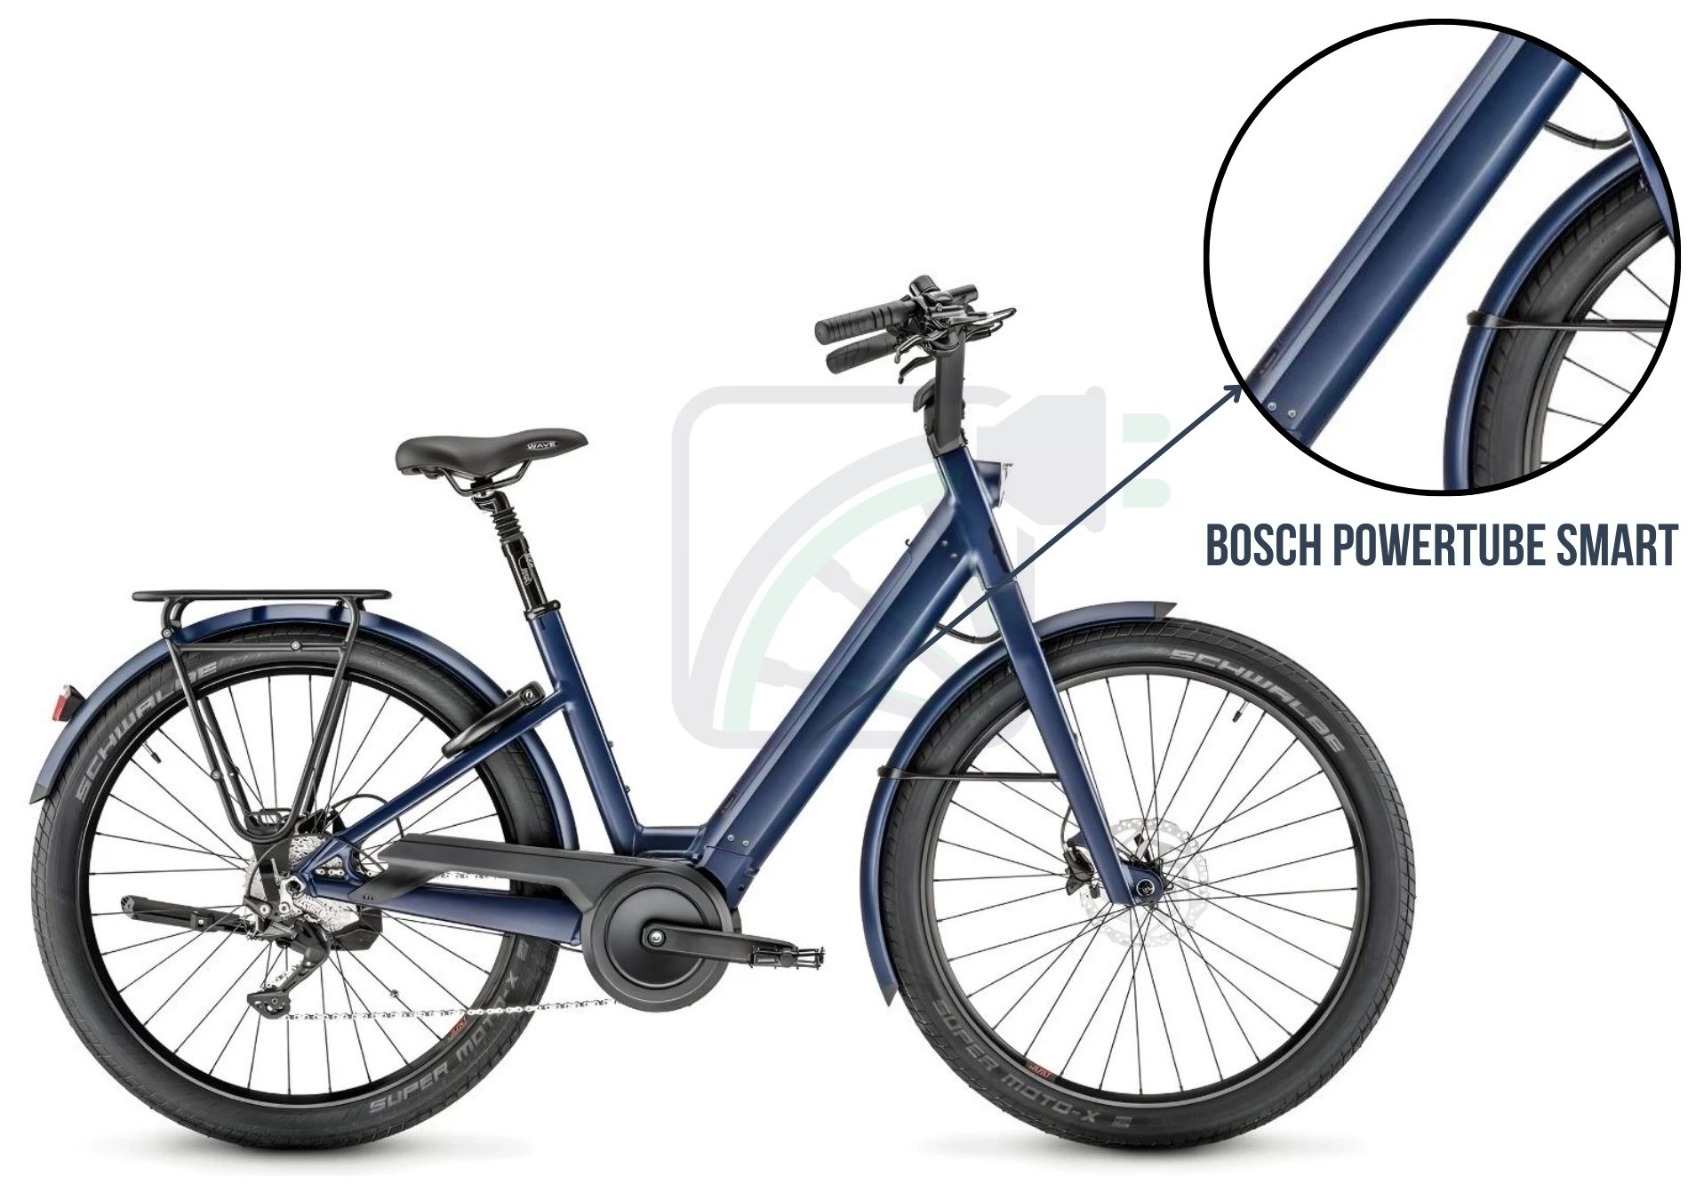 Foto van een elektrische fiets, met de nadruk op de accu van de fiets. De accu die hier wordt getoond is de Bosch PowerTube. Daarnaast worden ook de verschillende accu's genoemd die beschikbaar zijn voor deze fiets. Dit zijn de: Bosch PowerTube 400, 500, 625 en 750. Deze accu's zijn voor de SMART en niet-SMART varianten.